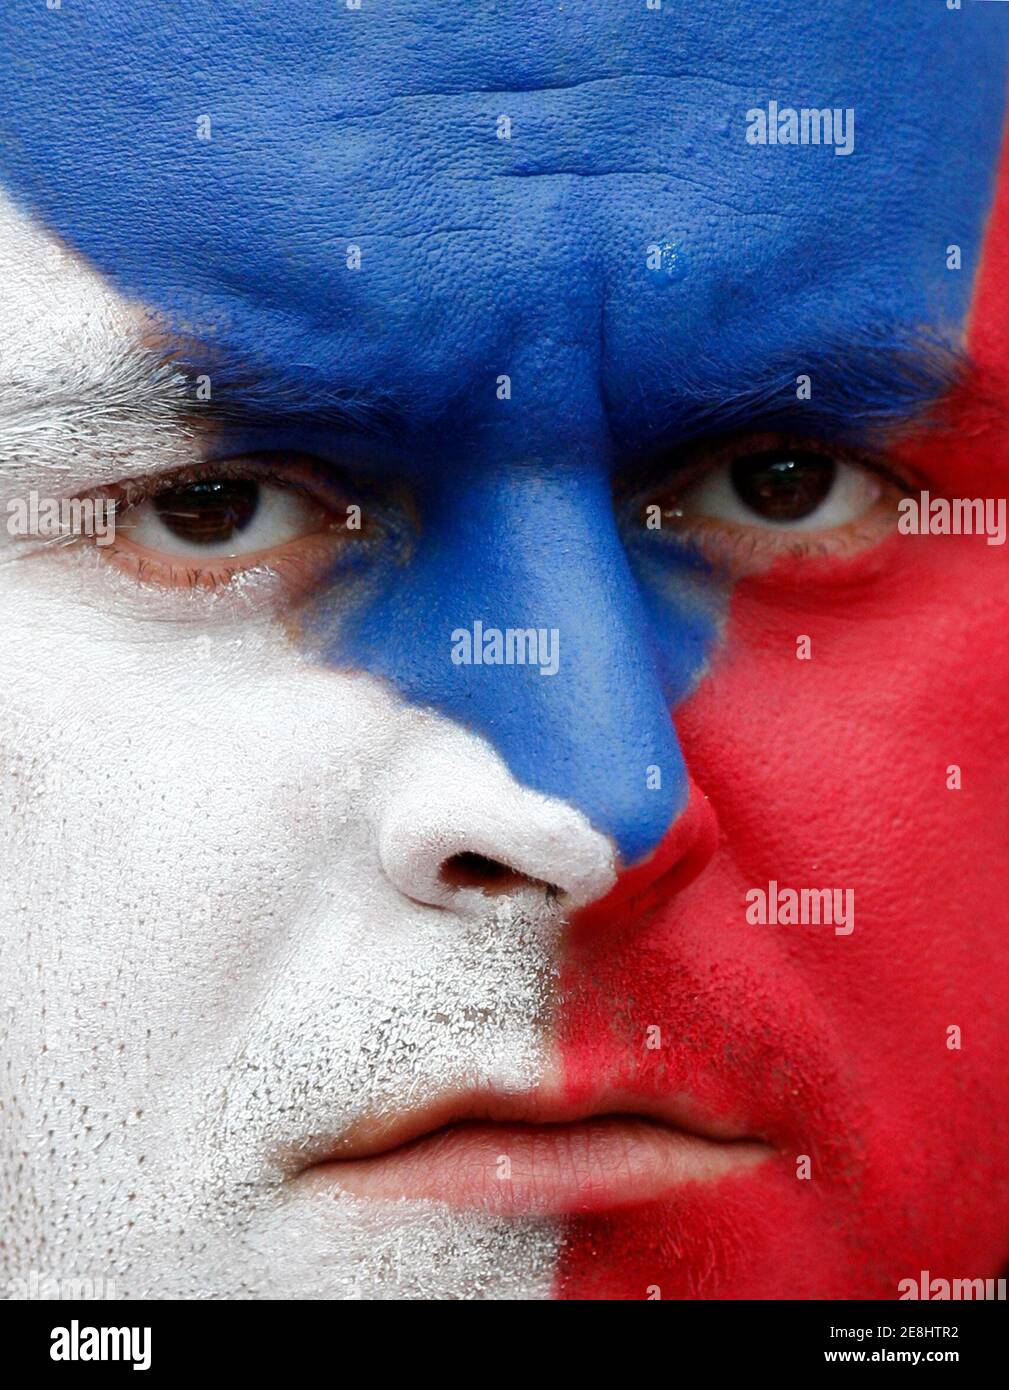 Un fan de la République tchèque attend le début de son match de football du groupe A Euro 2008 contre la Turquie au stade de Genève le 15 juin 2008. REUTERS/Jerry Lampen (SUISSE) MOBILE OUT. USAGE ÉDITORIAL UNIQUEMENT Banque D'Images